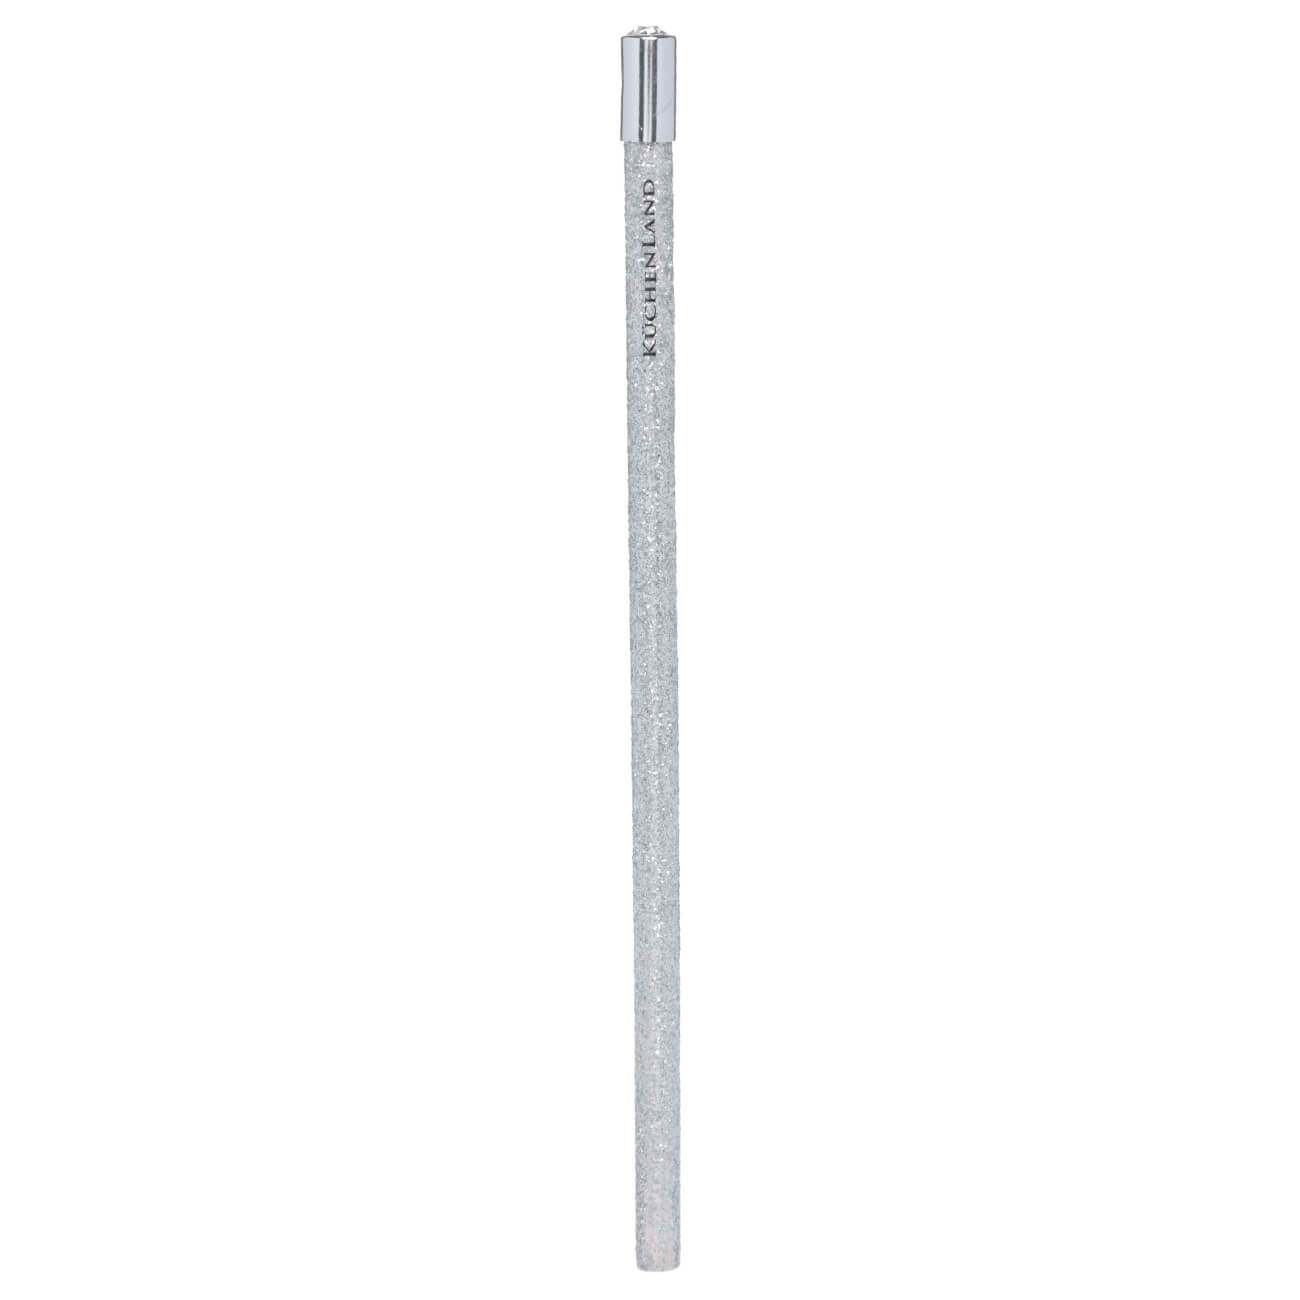 Карандаш, 18 см, чернографитный, серебристый, Draw sparcle карандаш 18 см чернографитный серебристый draw sparcle